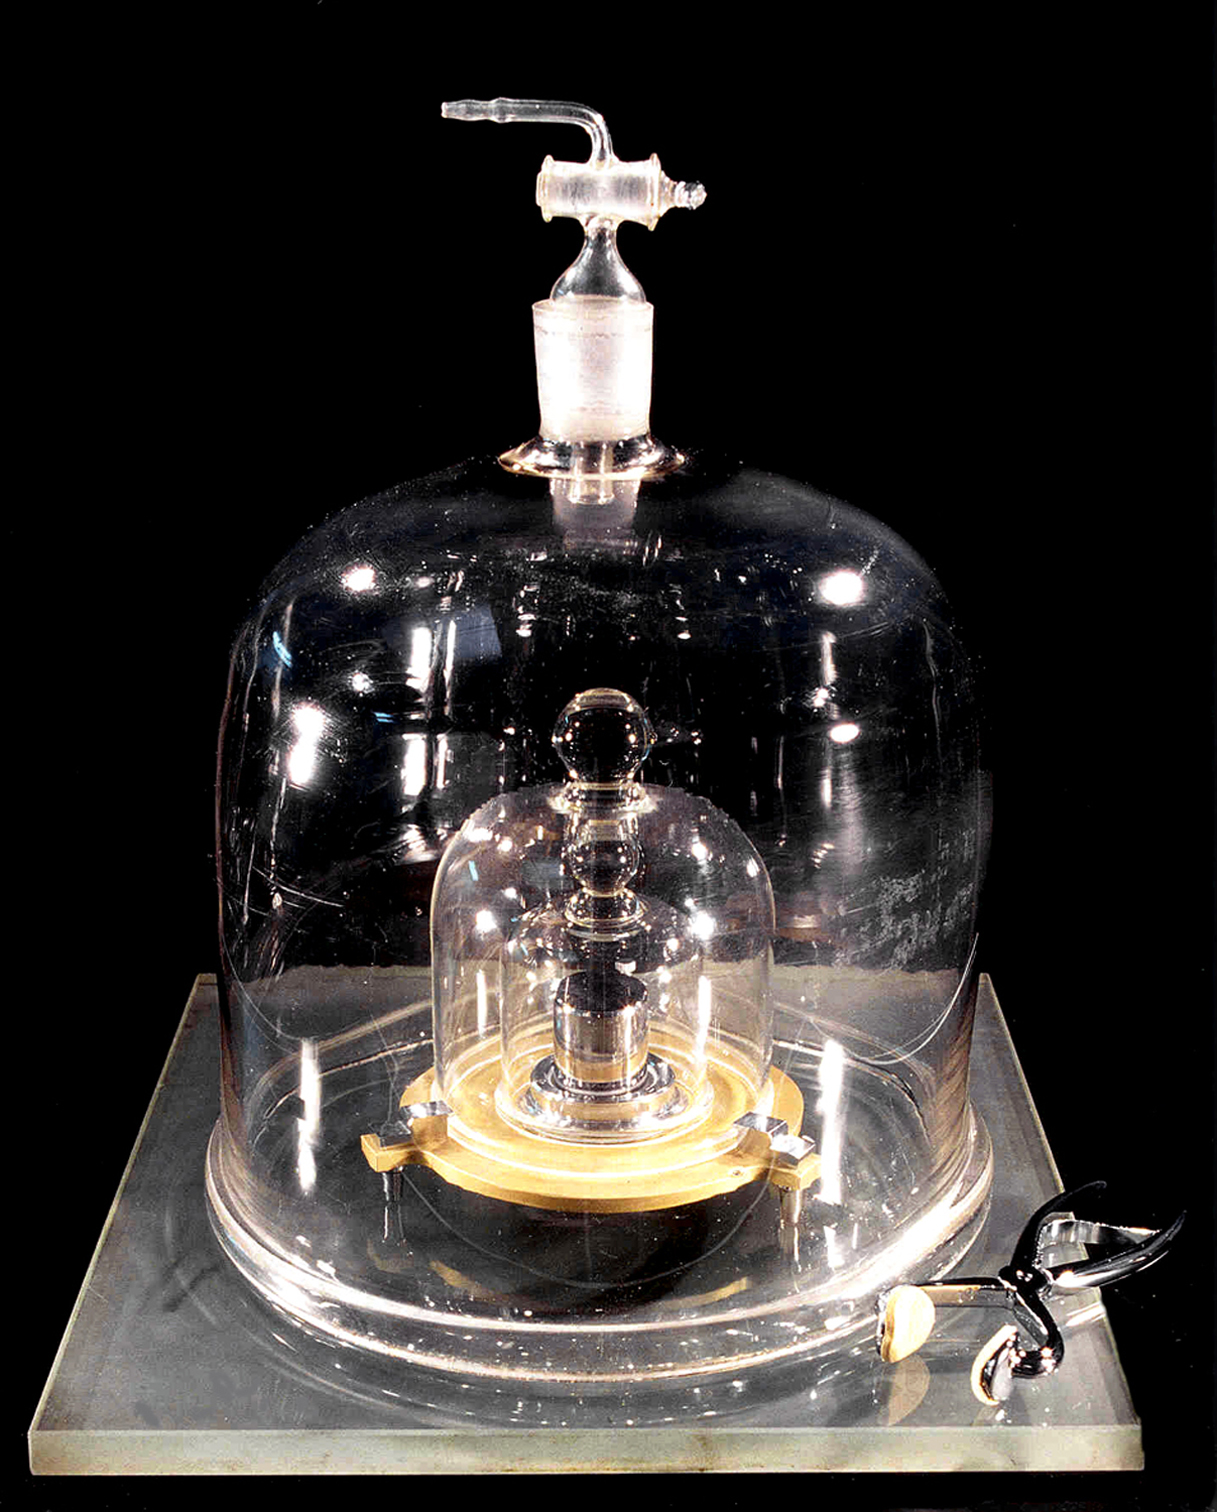 Bajo estas campanas de vidrio yace "el kilogramo original", el primero de todos. 